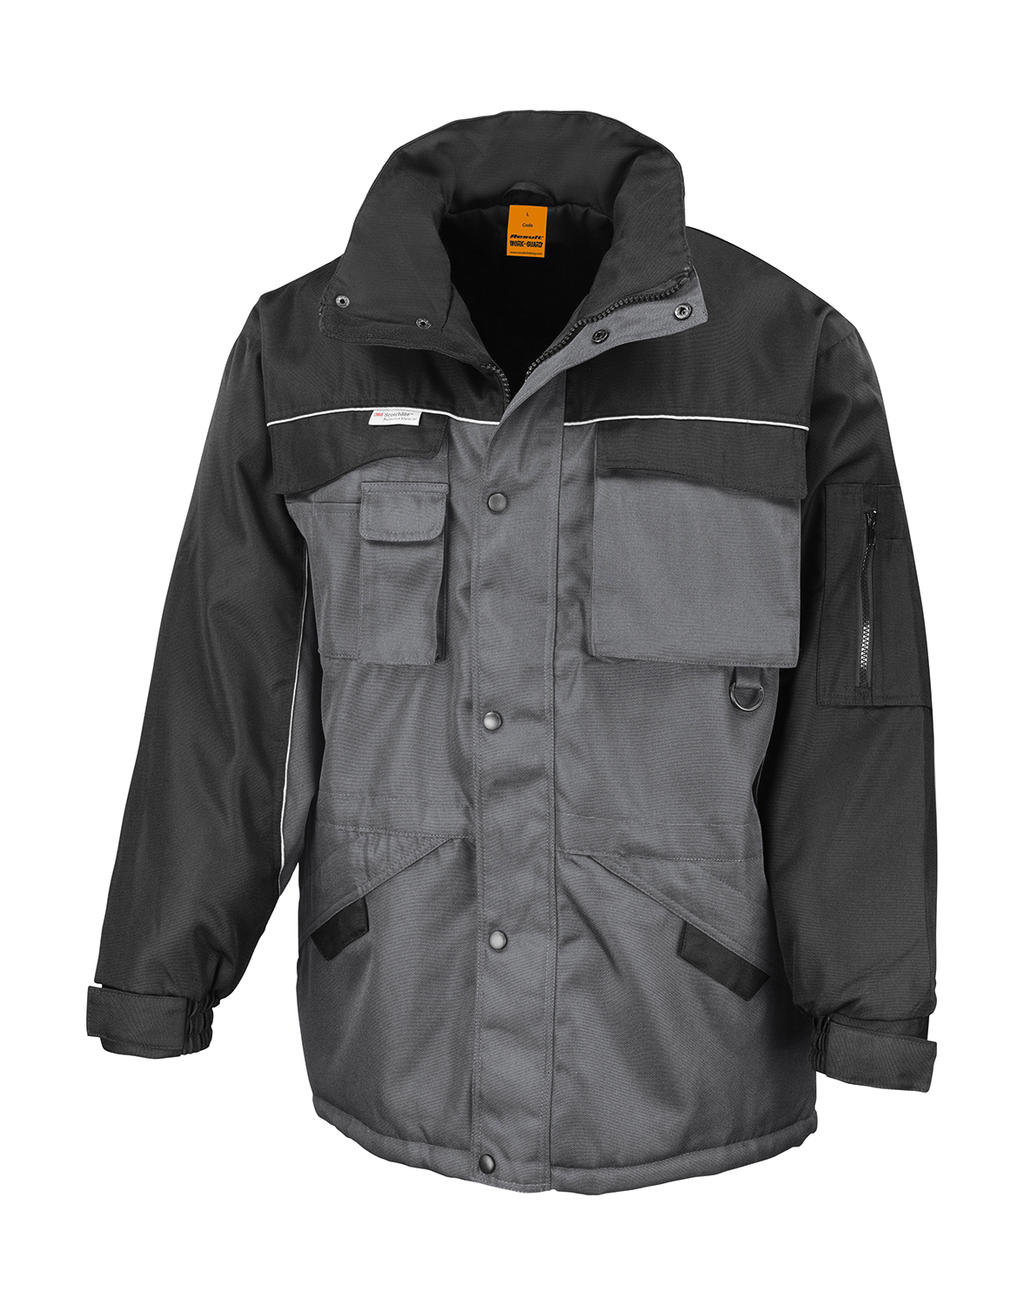  Heavy Duty Combo Jacket in Farbe Grey/Black